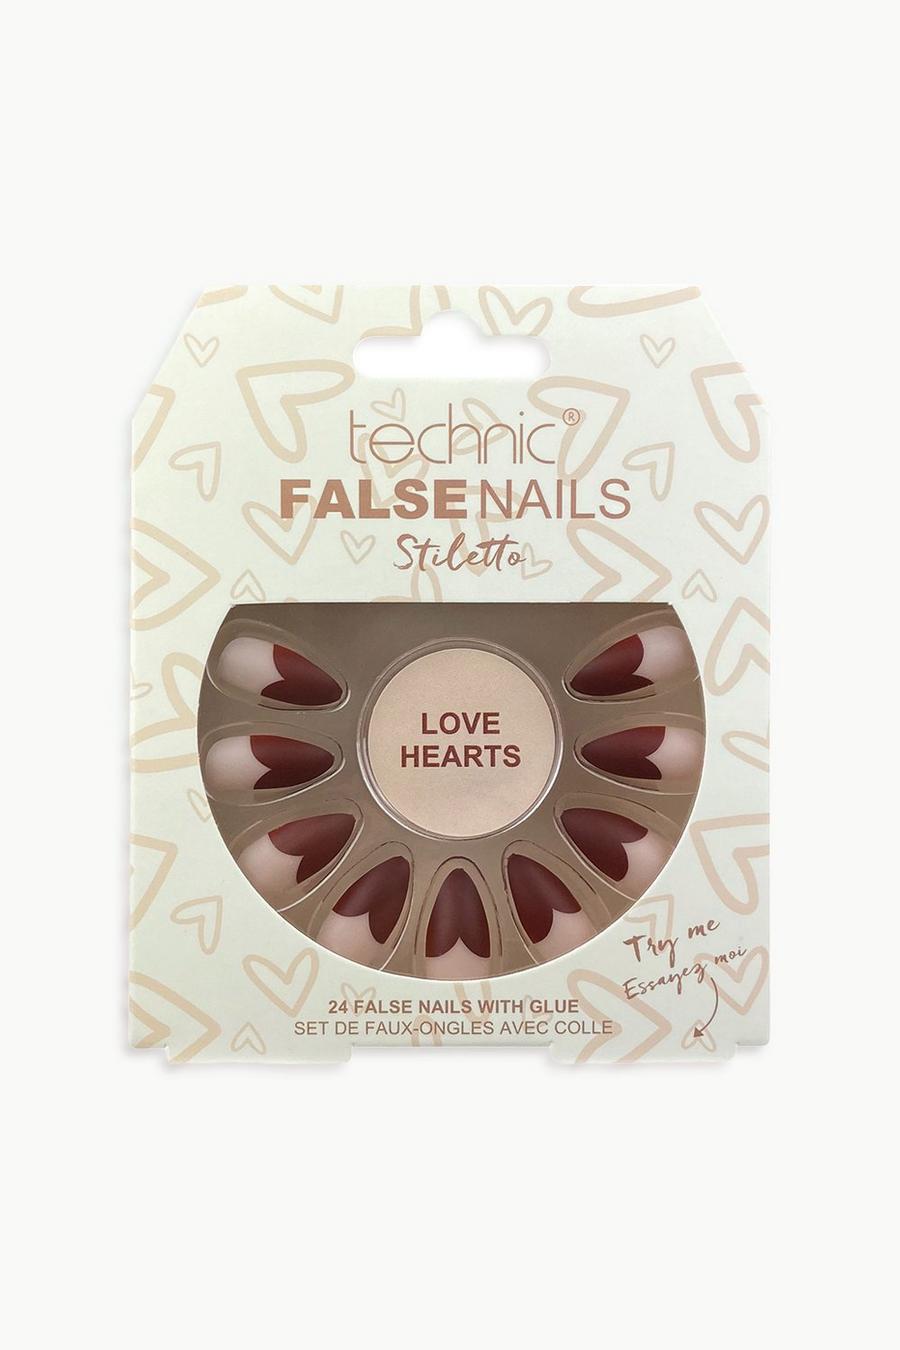 Cream bianco Technic False Nails Stiletto - Love Hearts